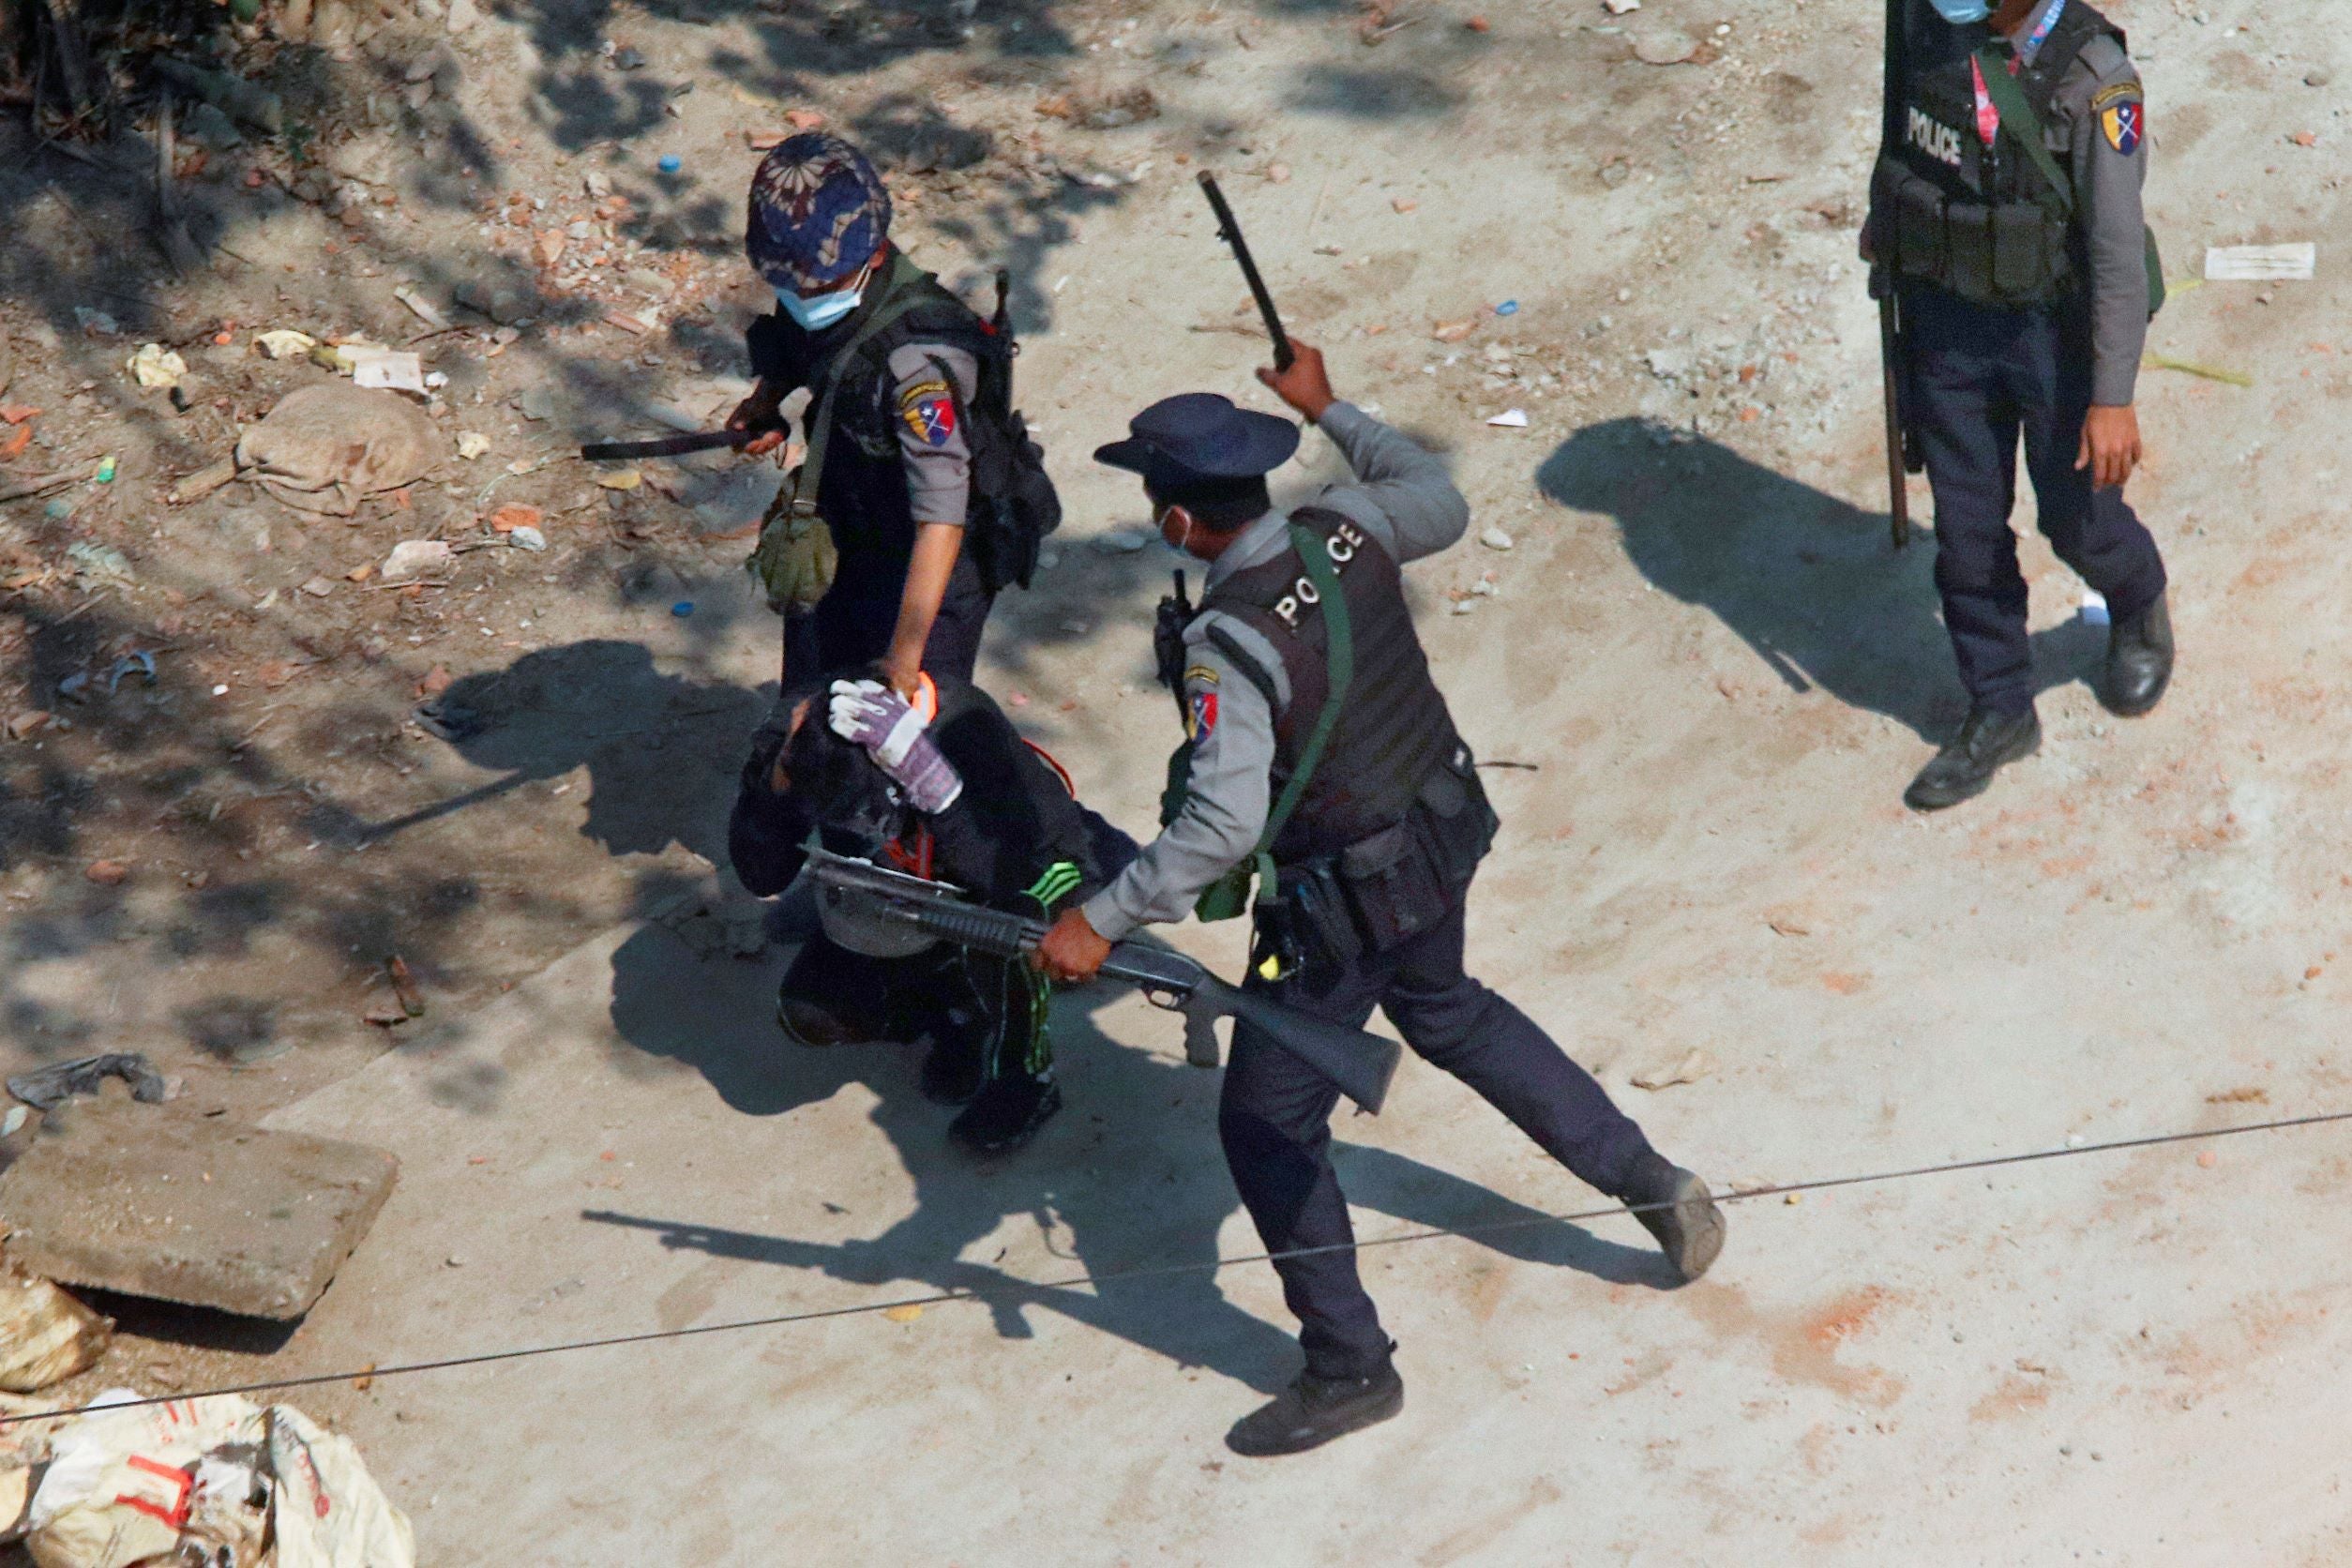 Un policier levait son bâton au-dessus de la tête d’un homme accroupi lors de la répression d’une manifestation à Yangon (Rangoun), le 6 mars 2021.